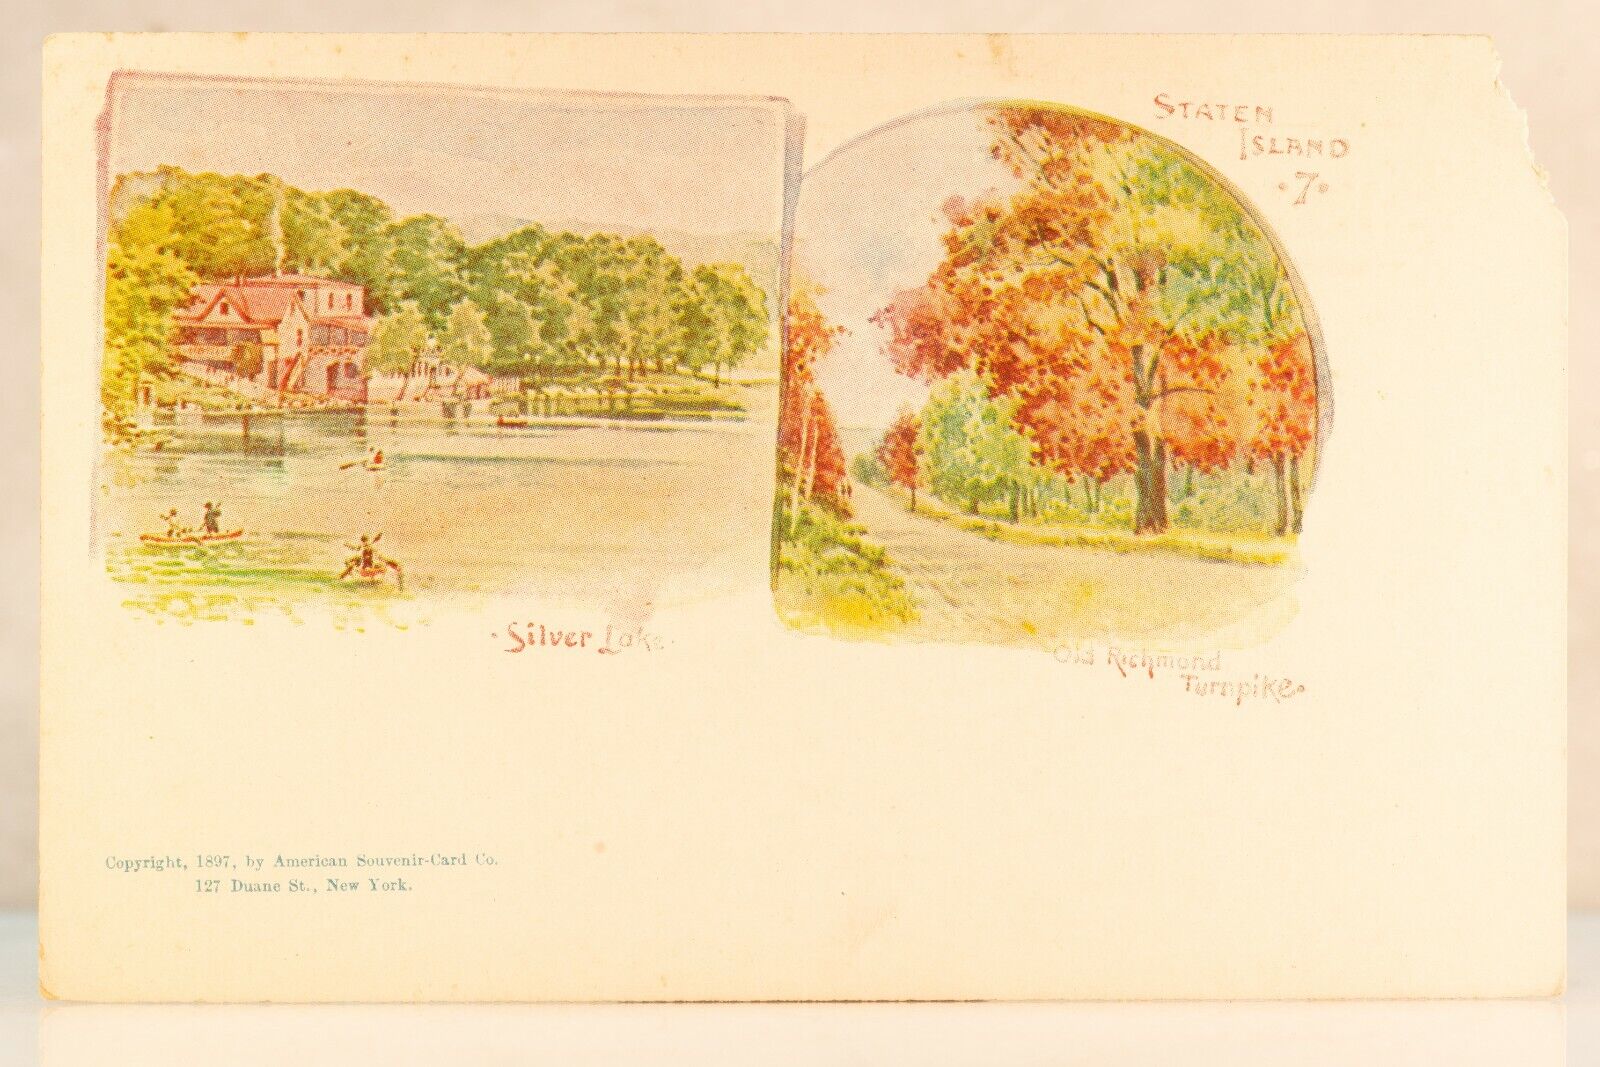 1897 Staten Island 7 Postcard, Richmond Turnpike, Silver Lake Souvenir Card